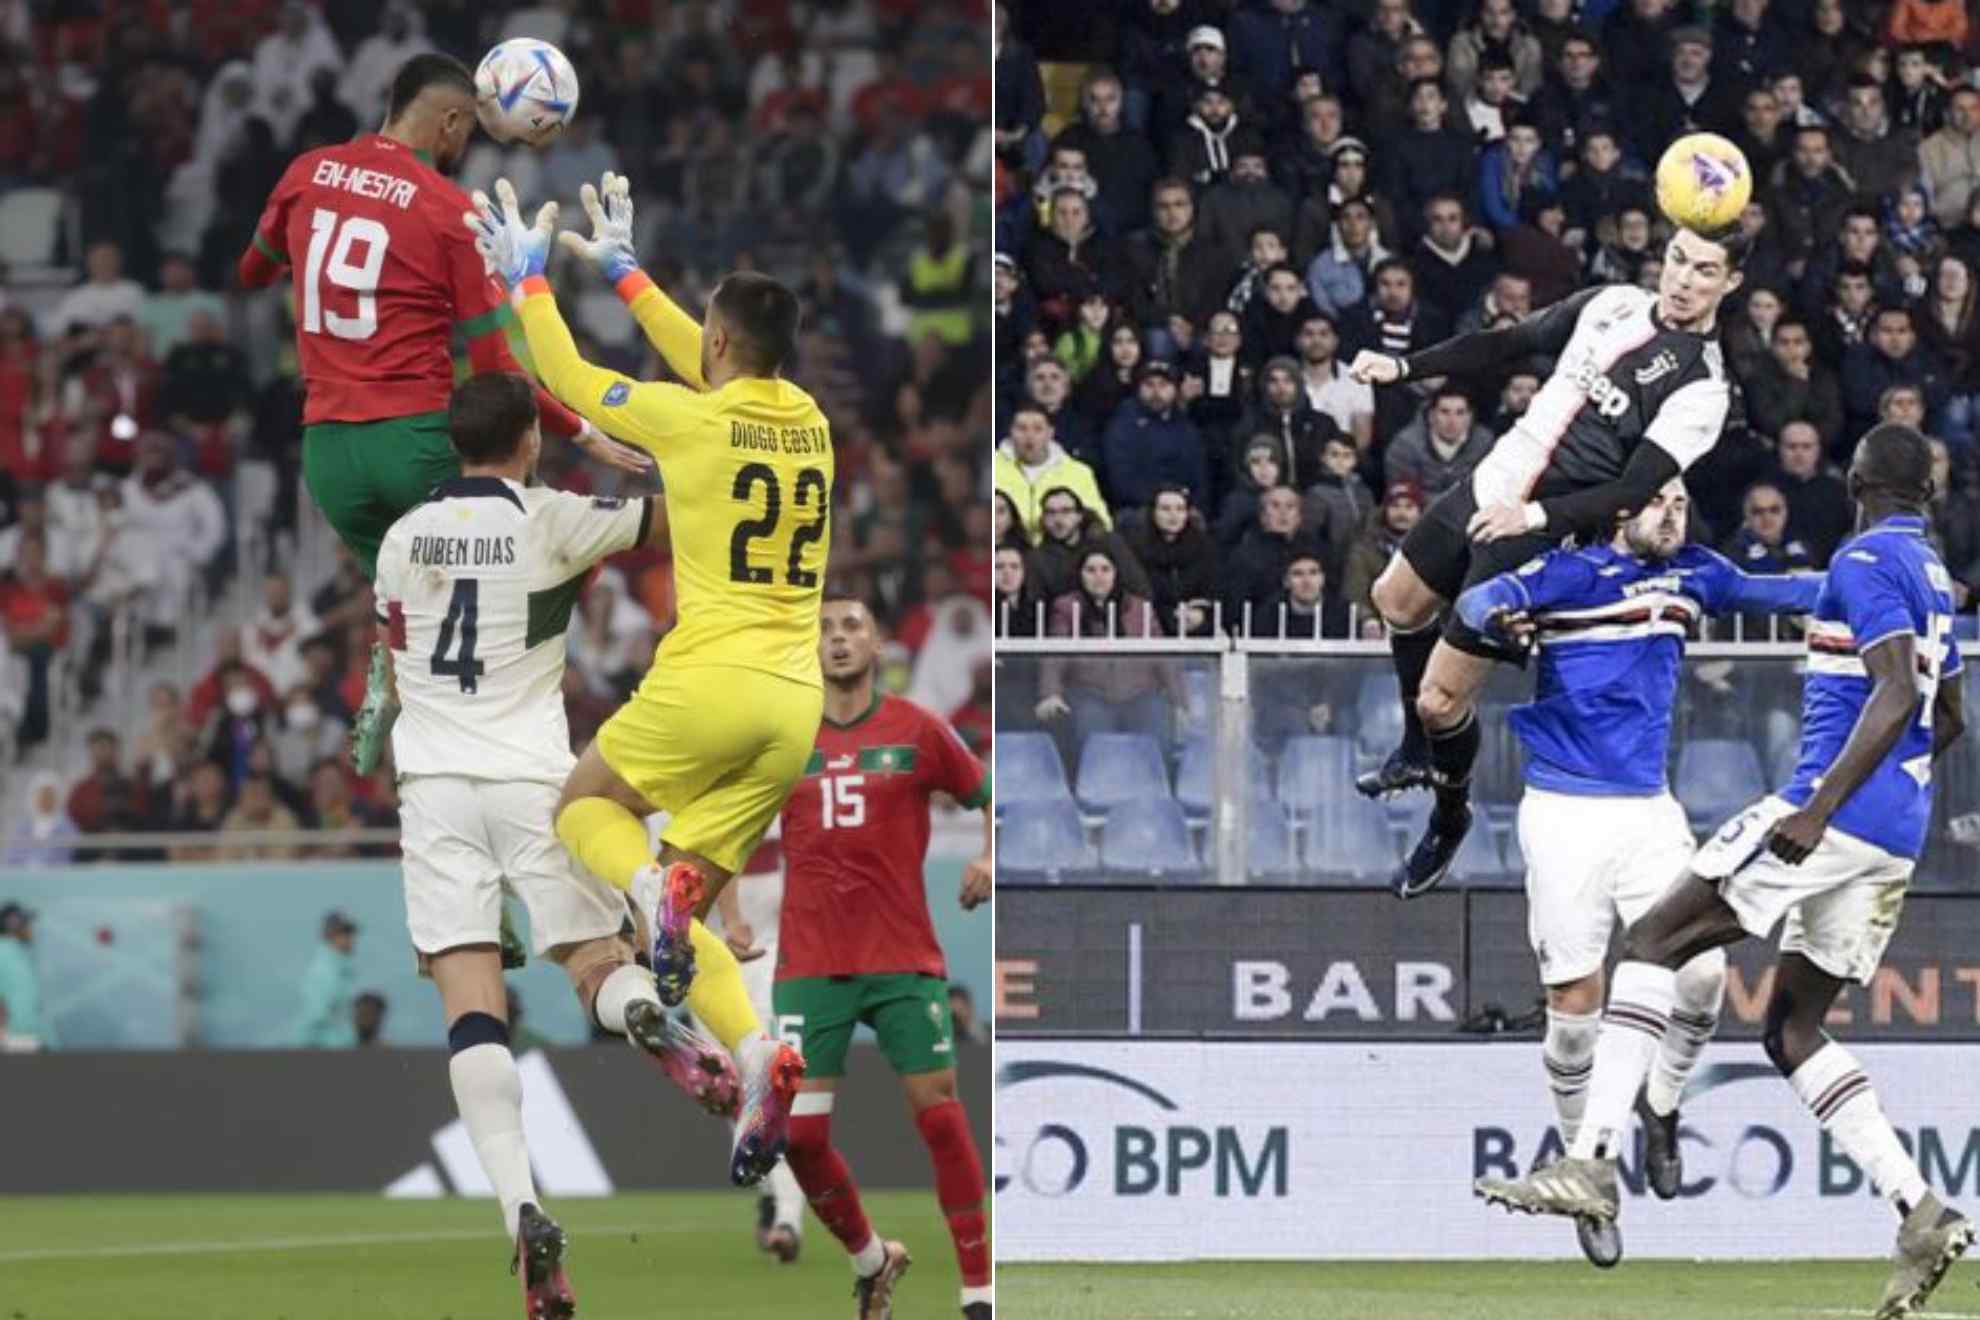 En-Nesyri's goal vs Portugal and Cristiano Ronaldo's goal vs Sampdoria